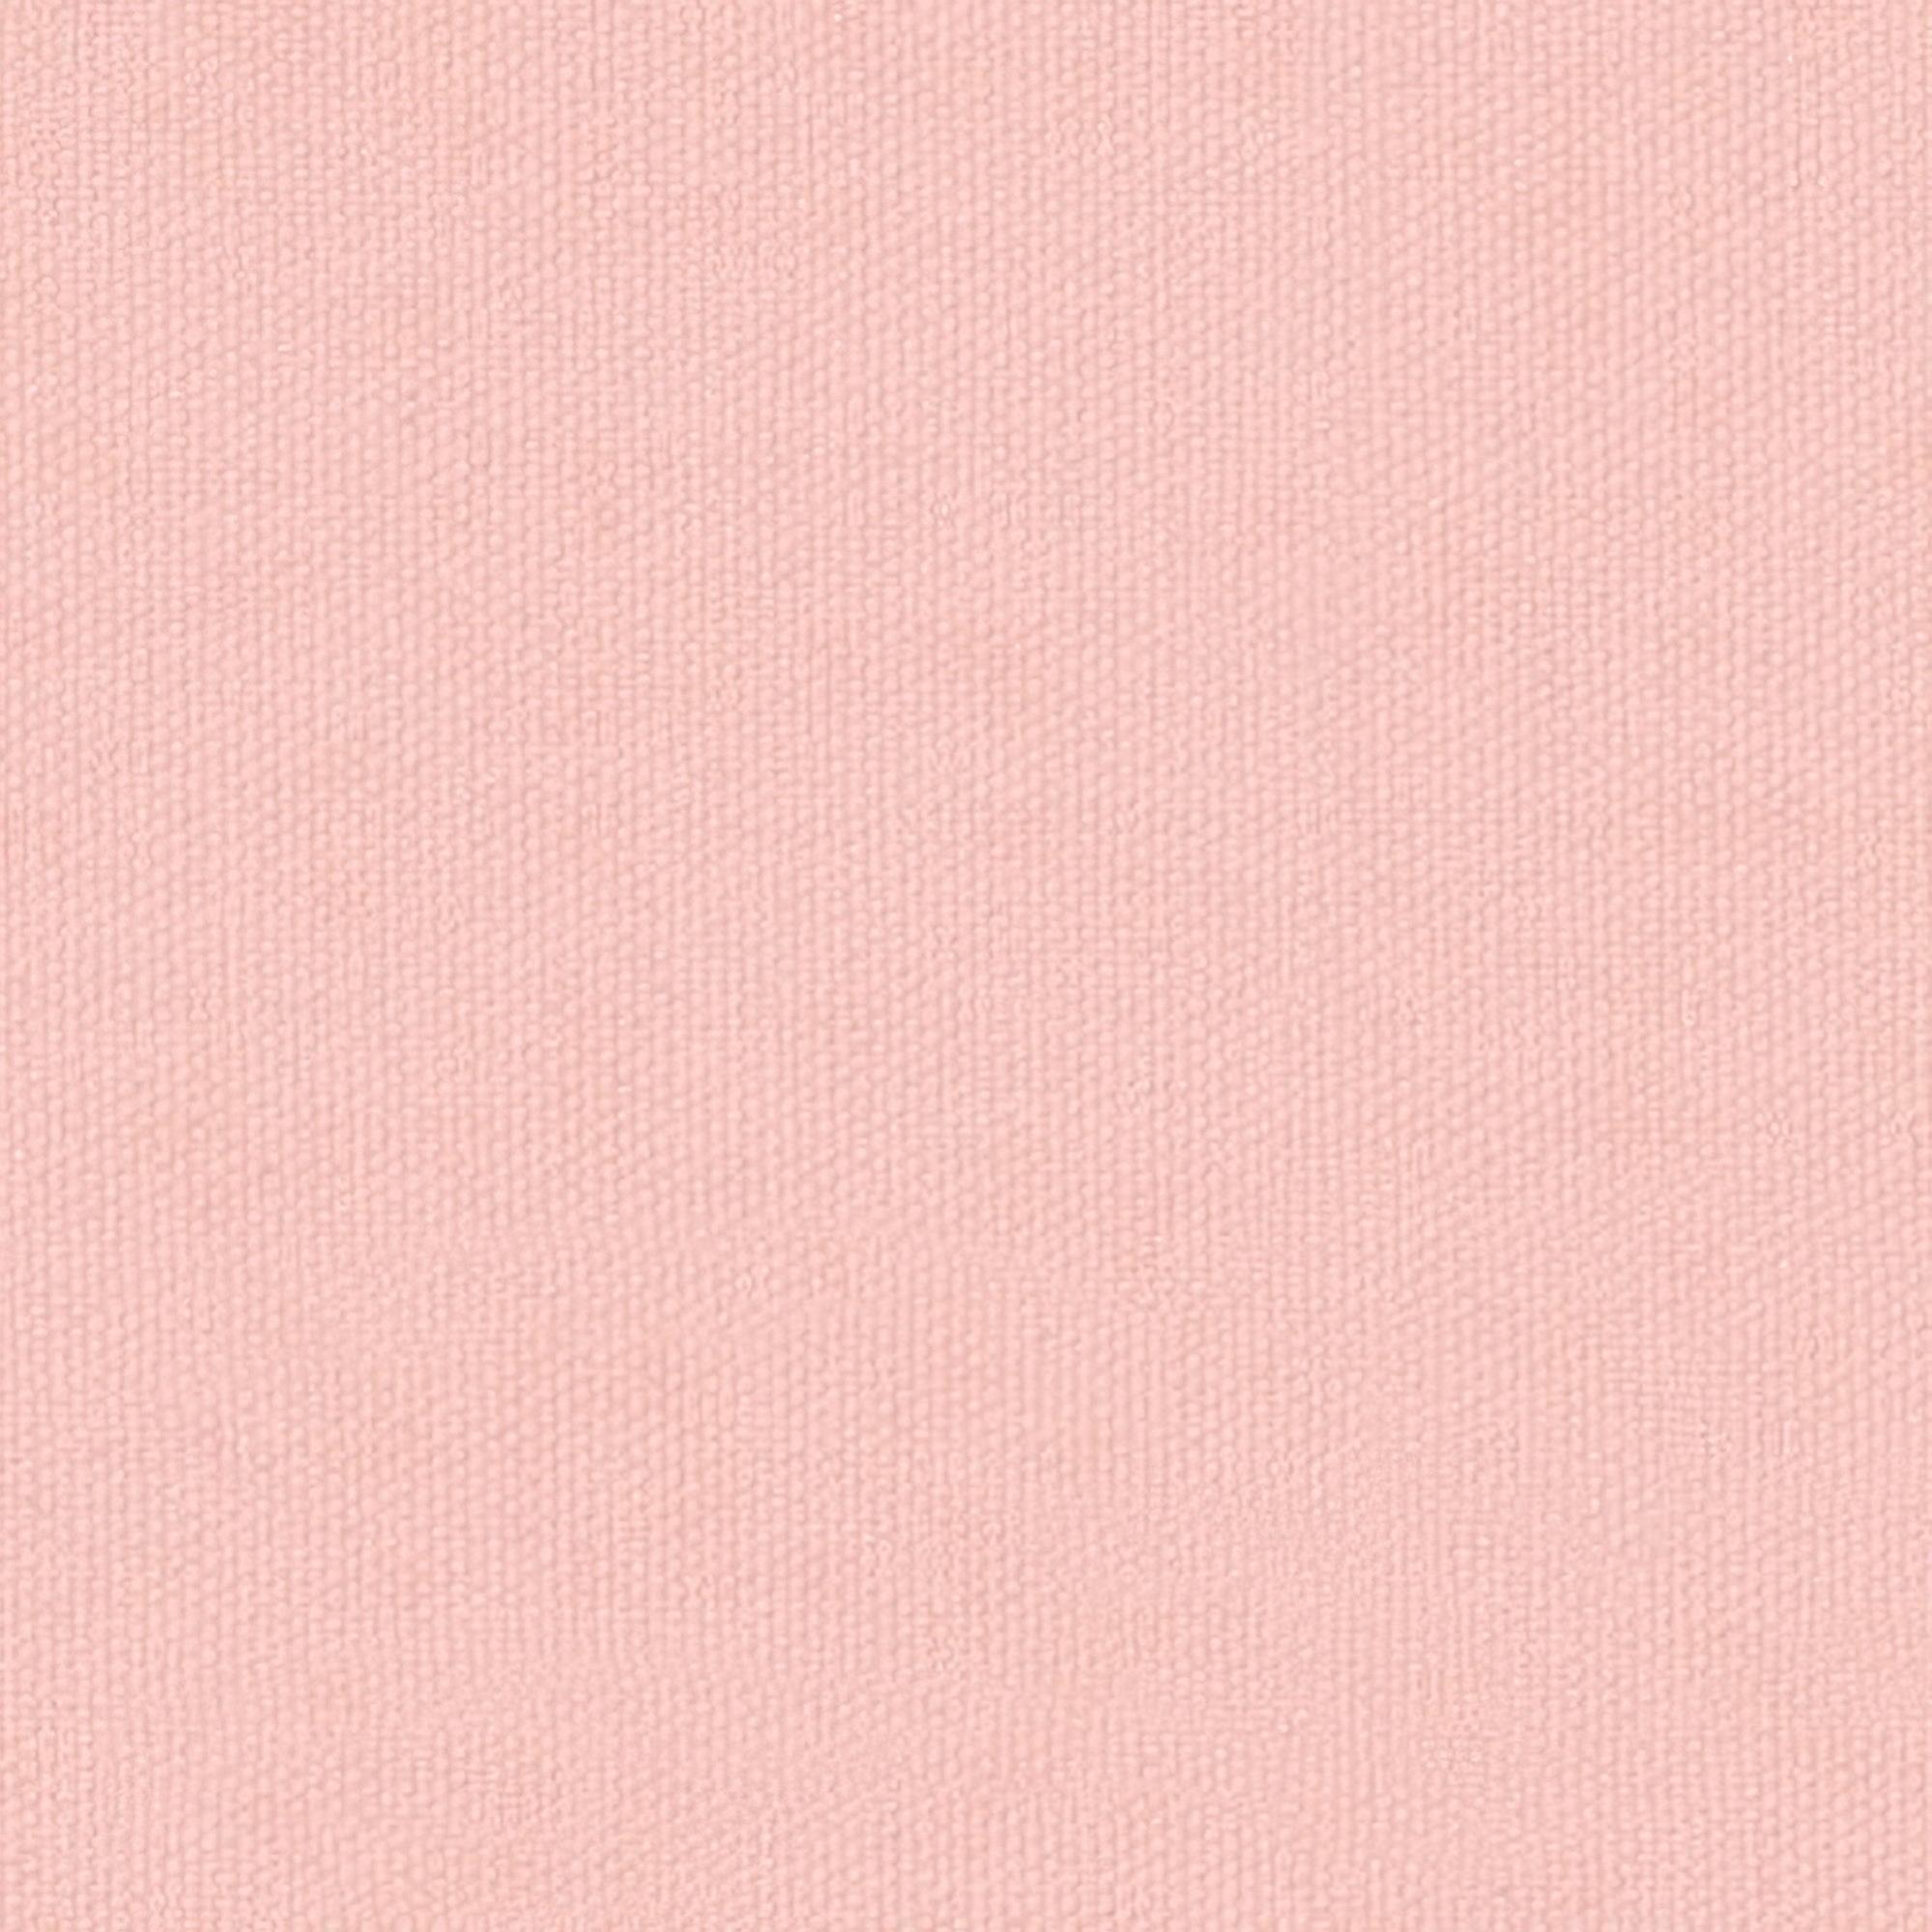 Tela al corte tapicería algodón dijon rosa ancho 140 cm